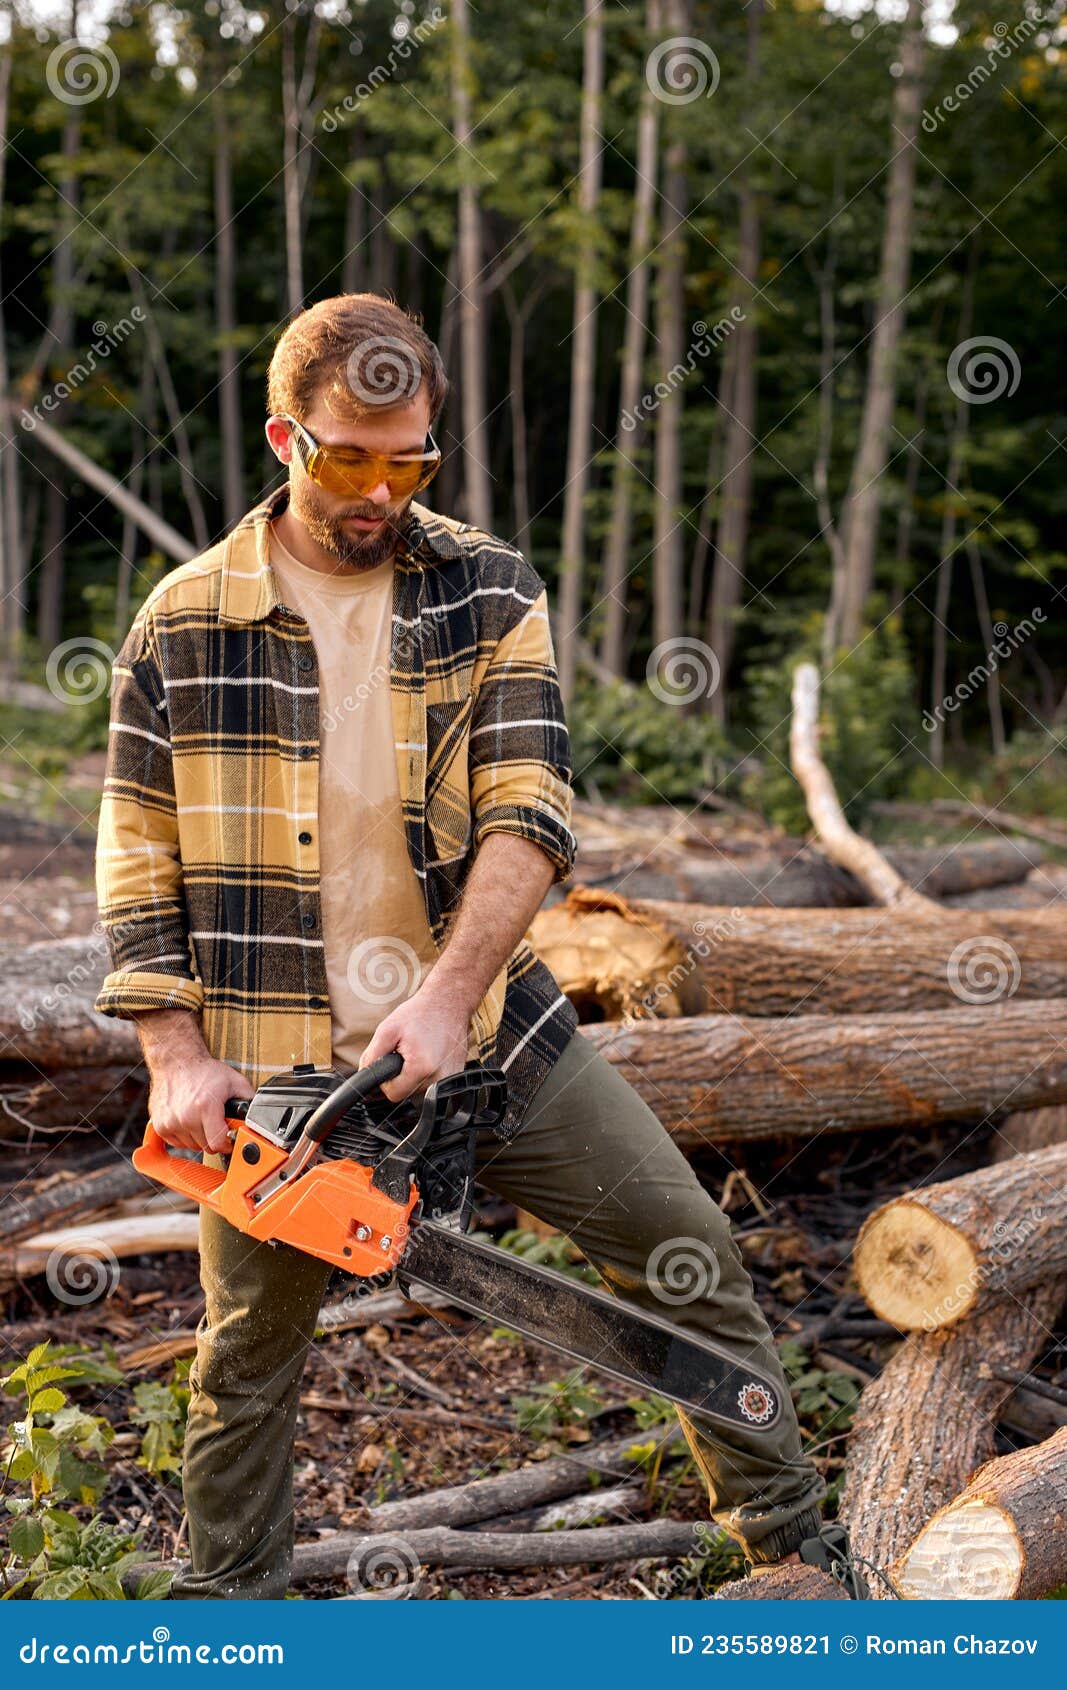 行动的老练的女性伐木工人 库存图片. 图片 包括有 本质, 证券, 安全性, 严格, 木料, 柏油的, 挑运 - 132782471